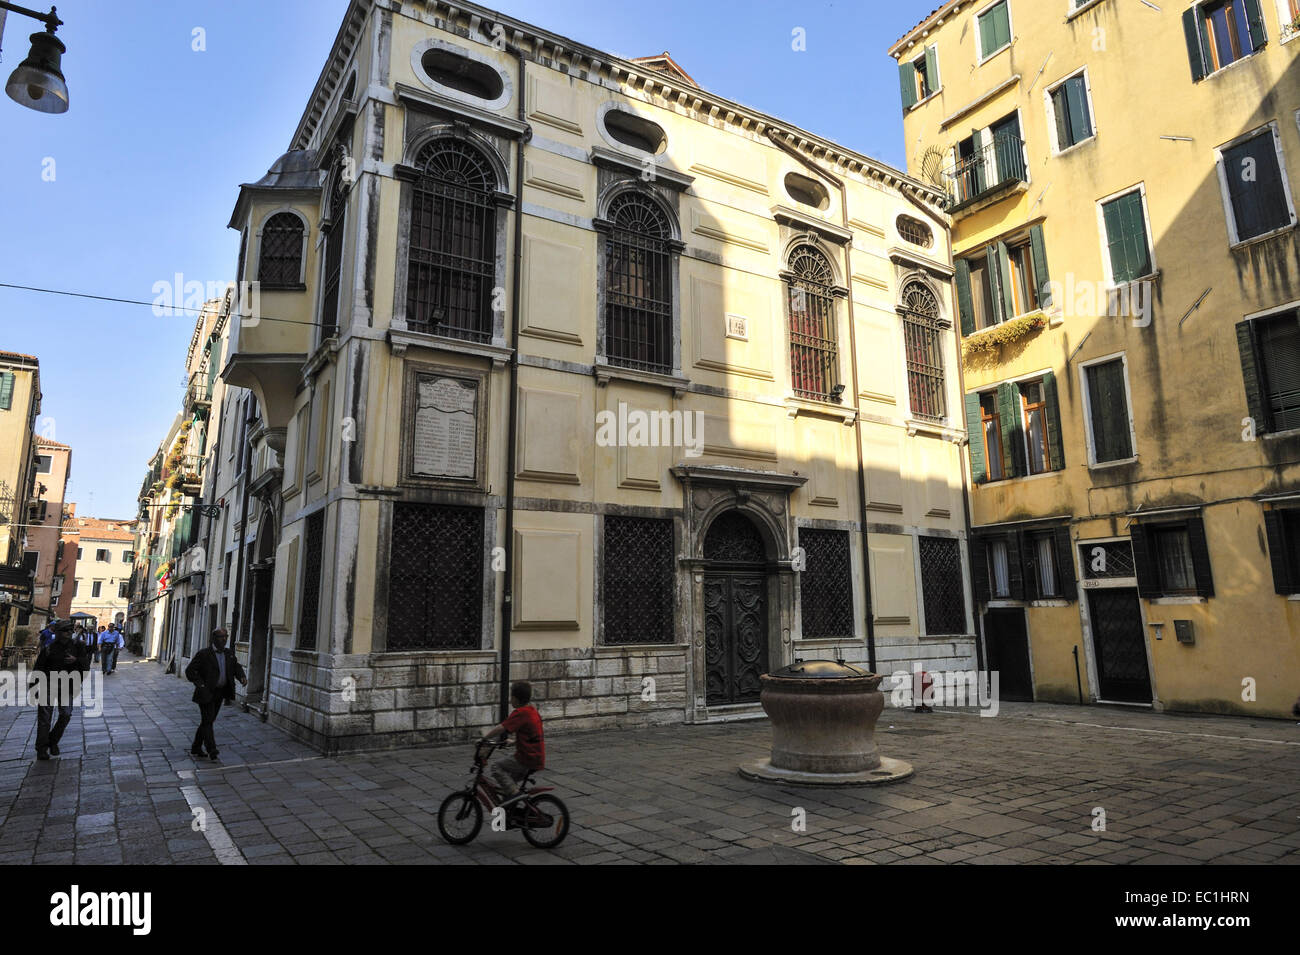 Sinagoga levantina, Venecia, exterior, en el Ghetto Vecchio (viejo Ghetto): La Scola levantina. Entre los judíos ricos Foto de stock